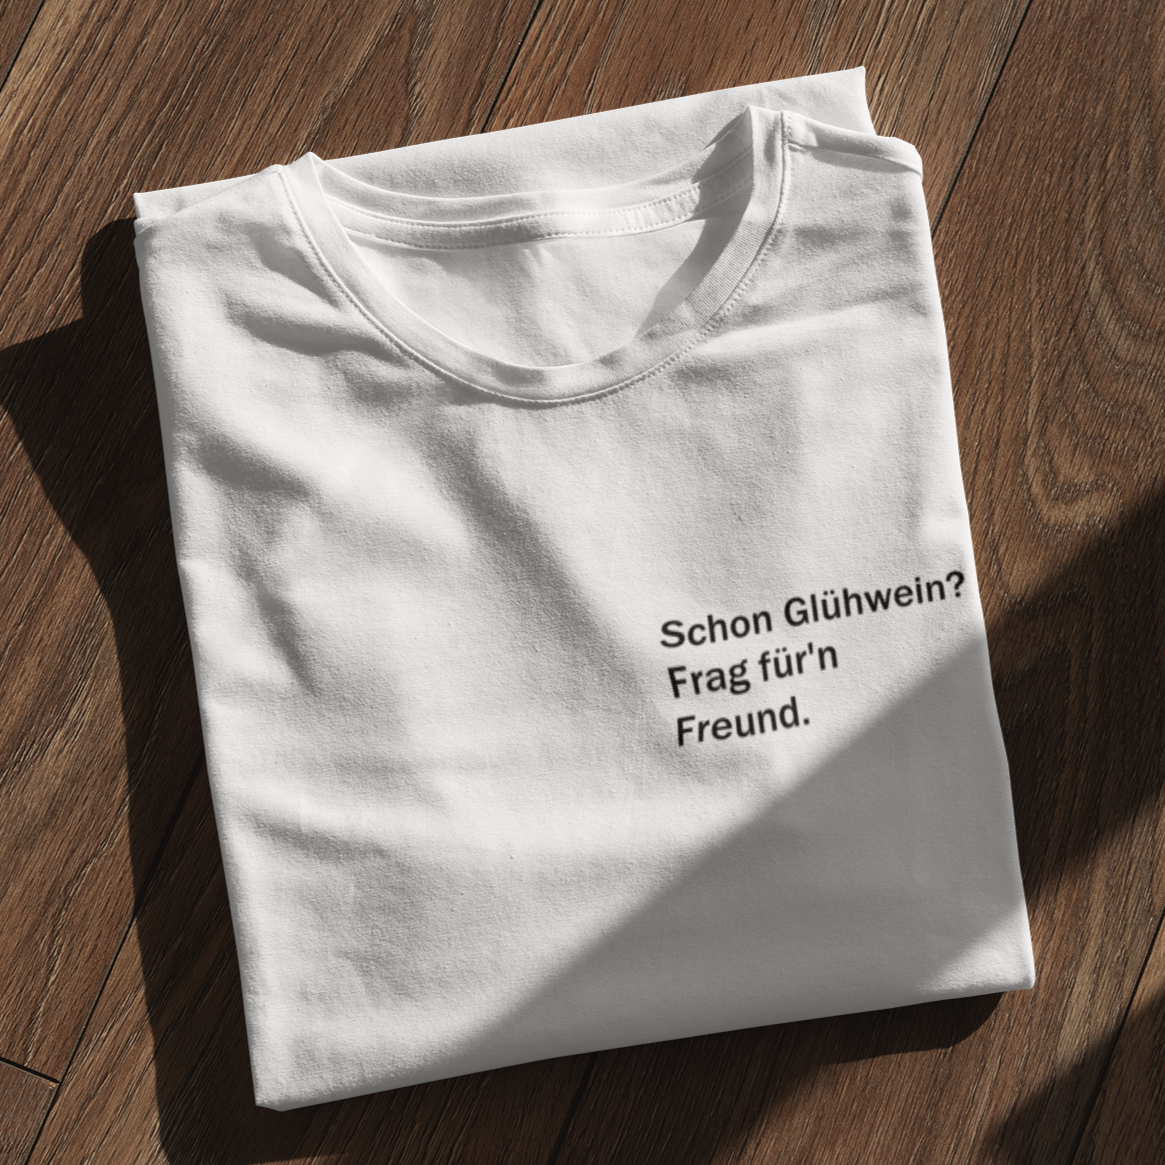 FRAG FÜR'N FREUND - Premium Shirt - Weinspirits